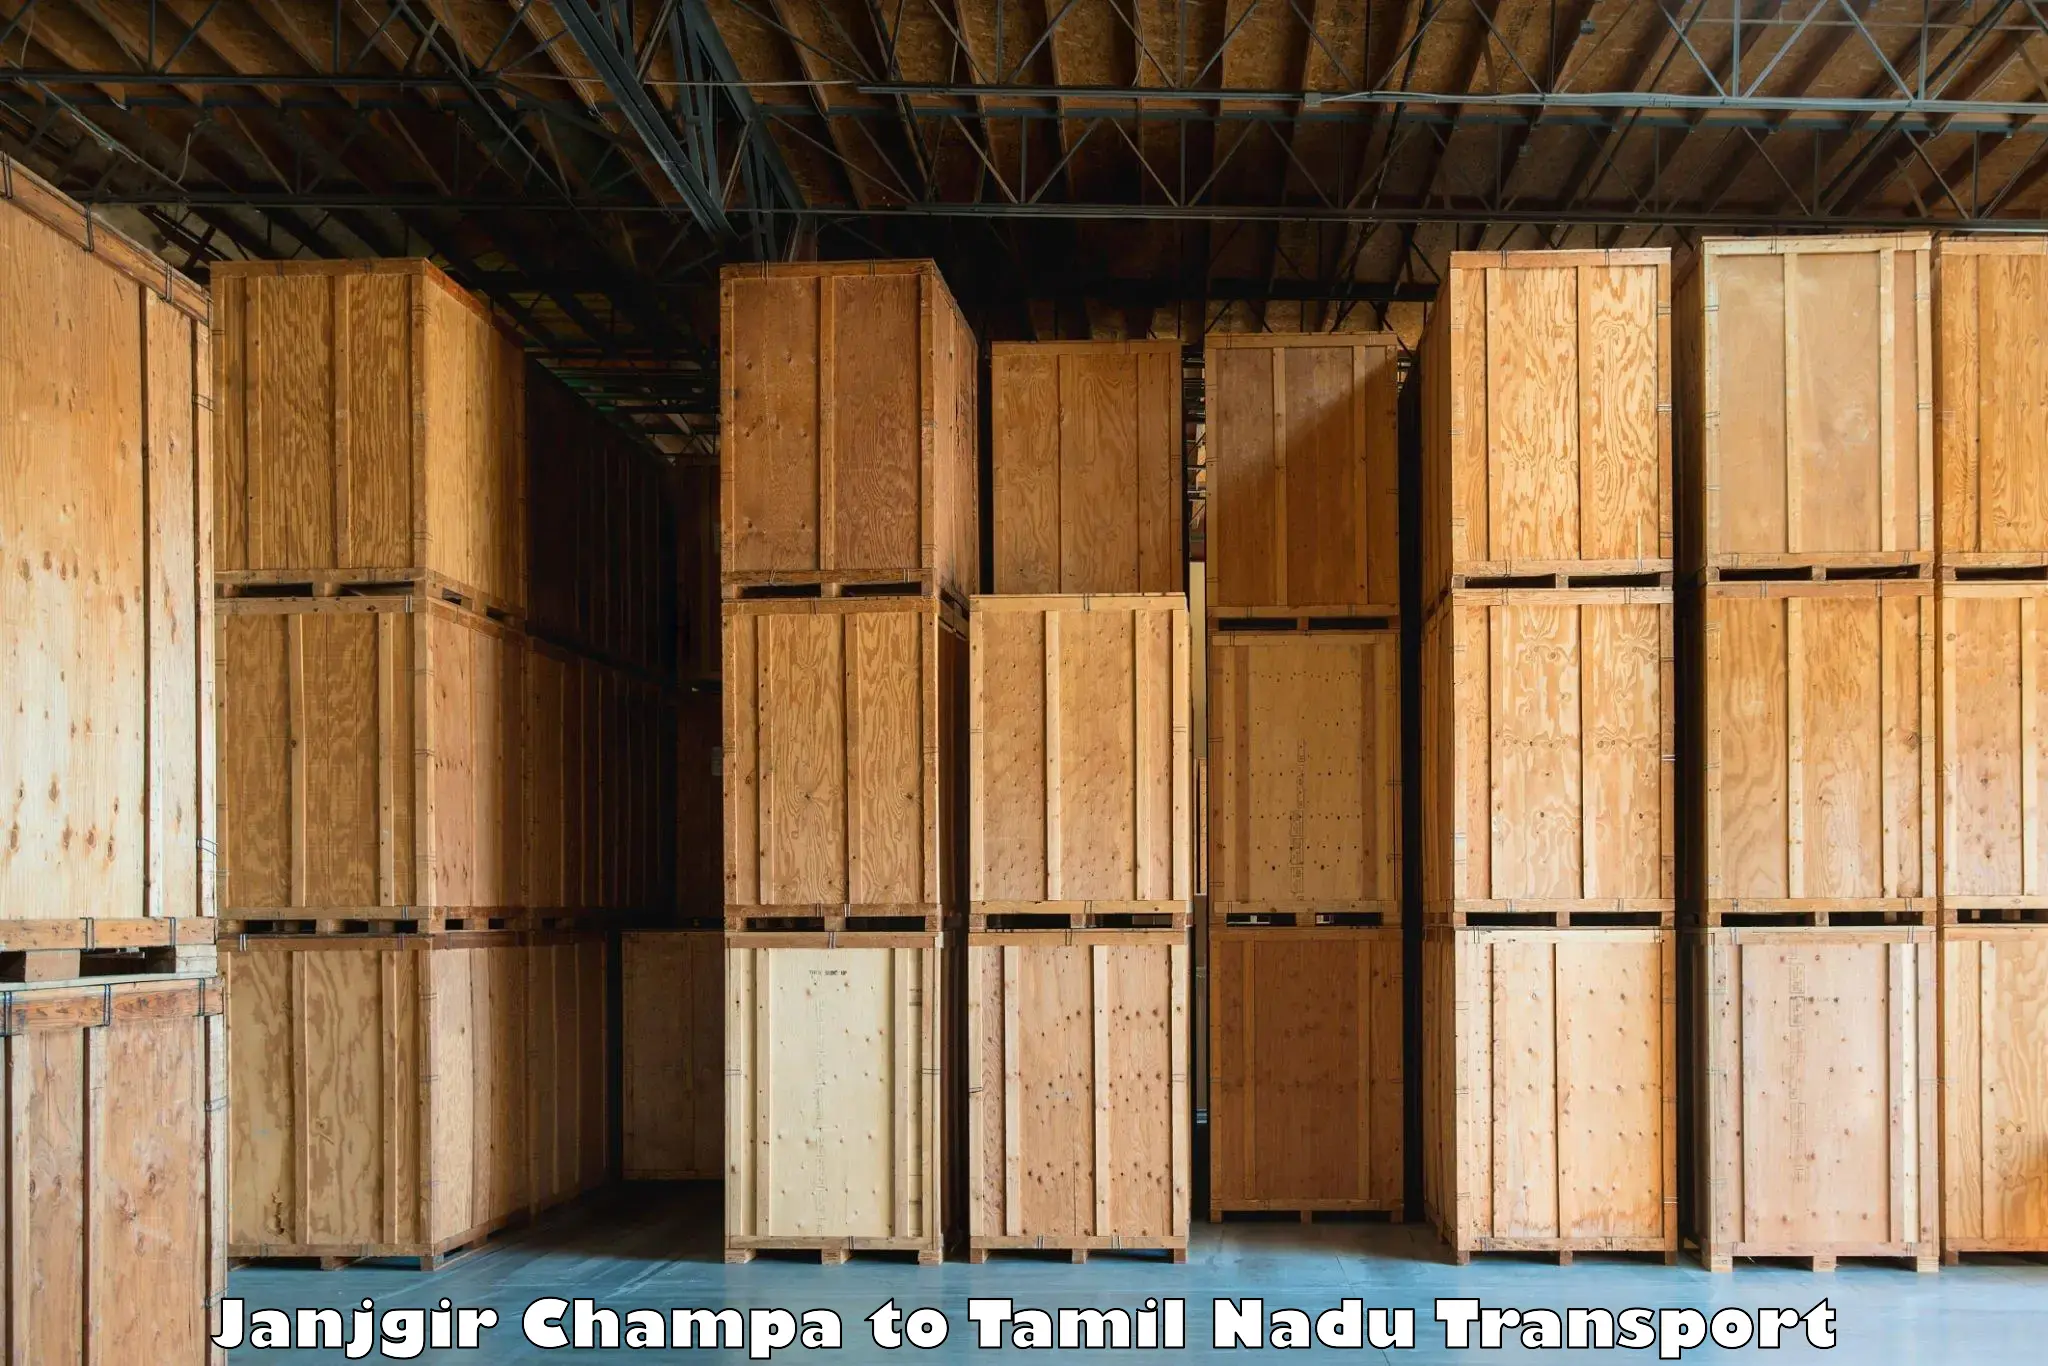 Online transport service Janjgir Champa to Nanguneri